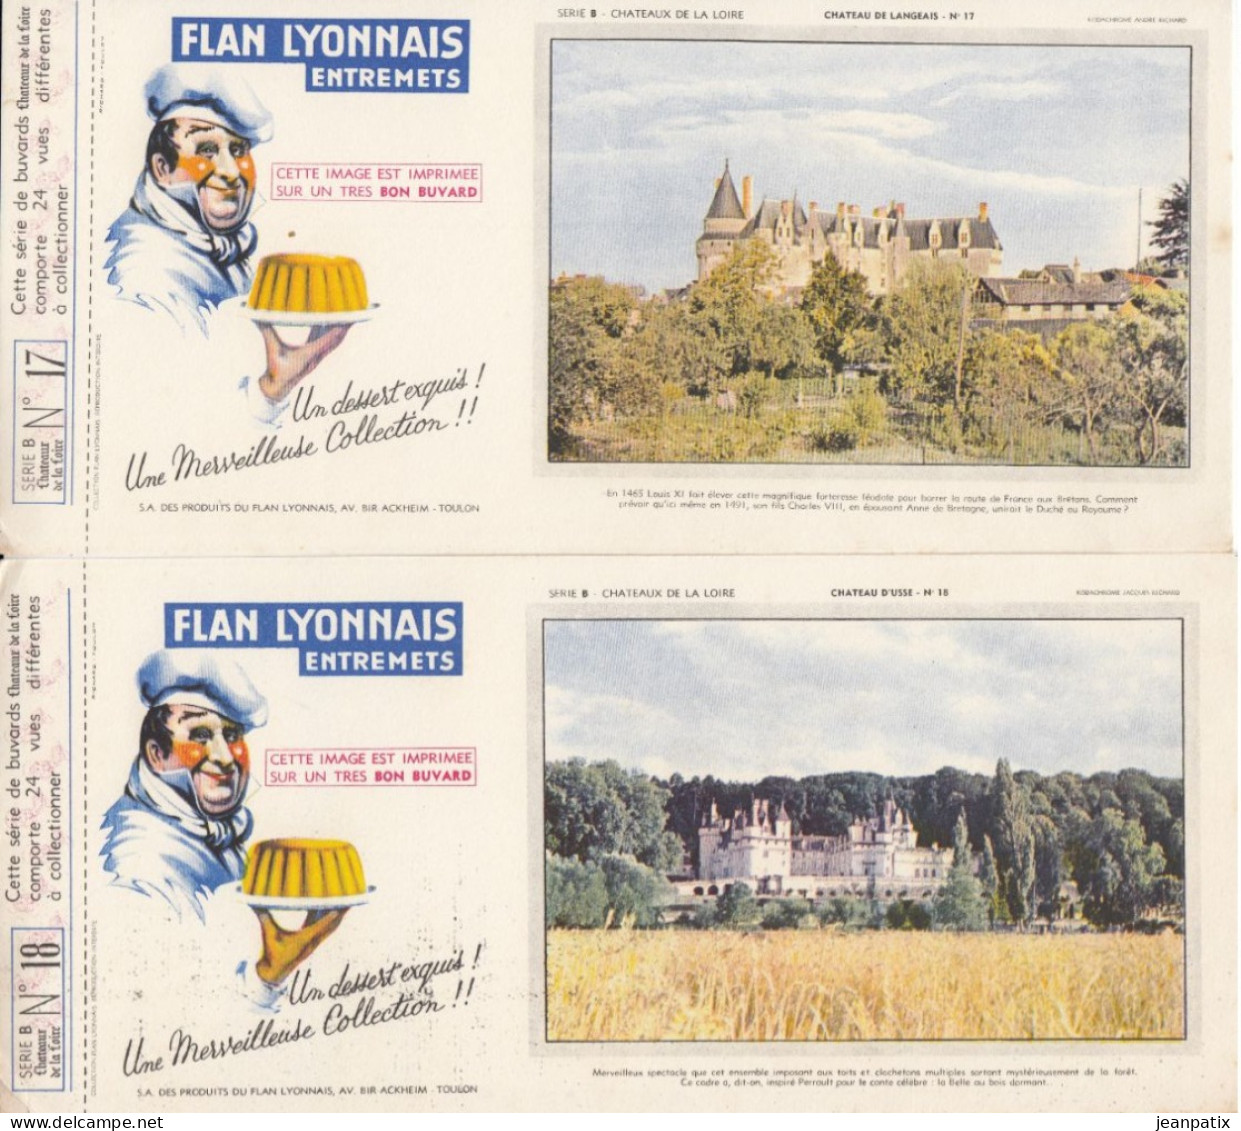 BUVARD & BLOTTER - collection complète des 24 buvards Flan lyonnais - série B - châteaux de la Loire